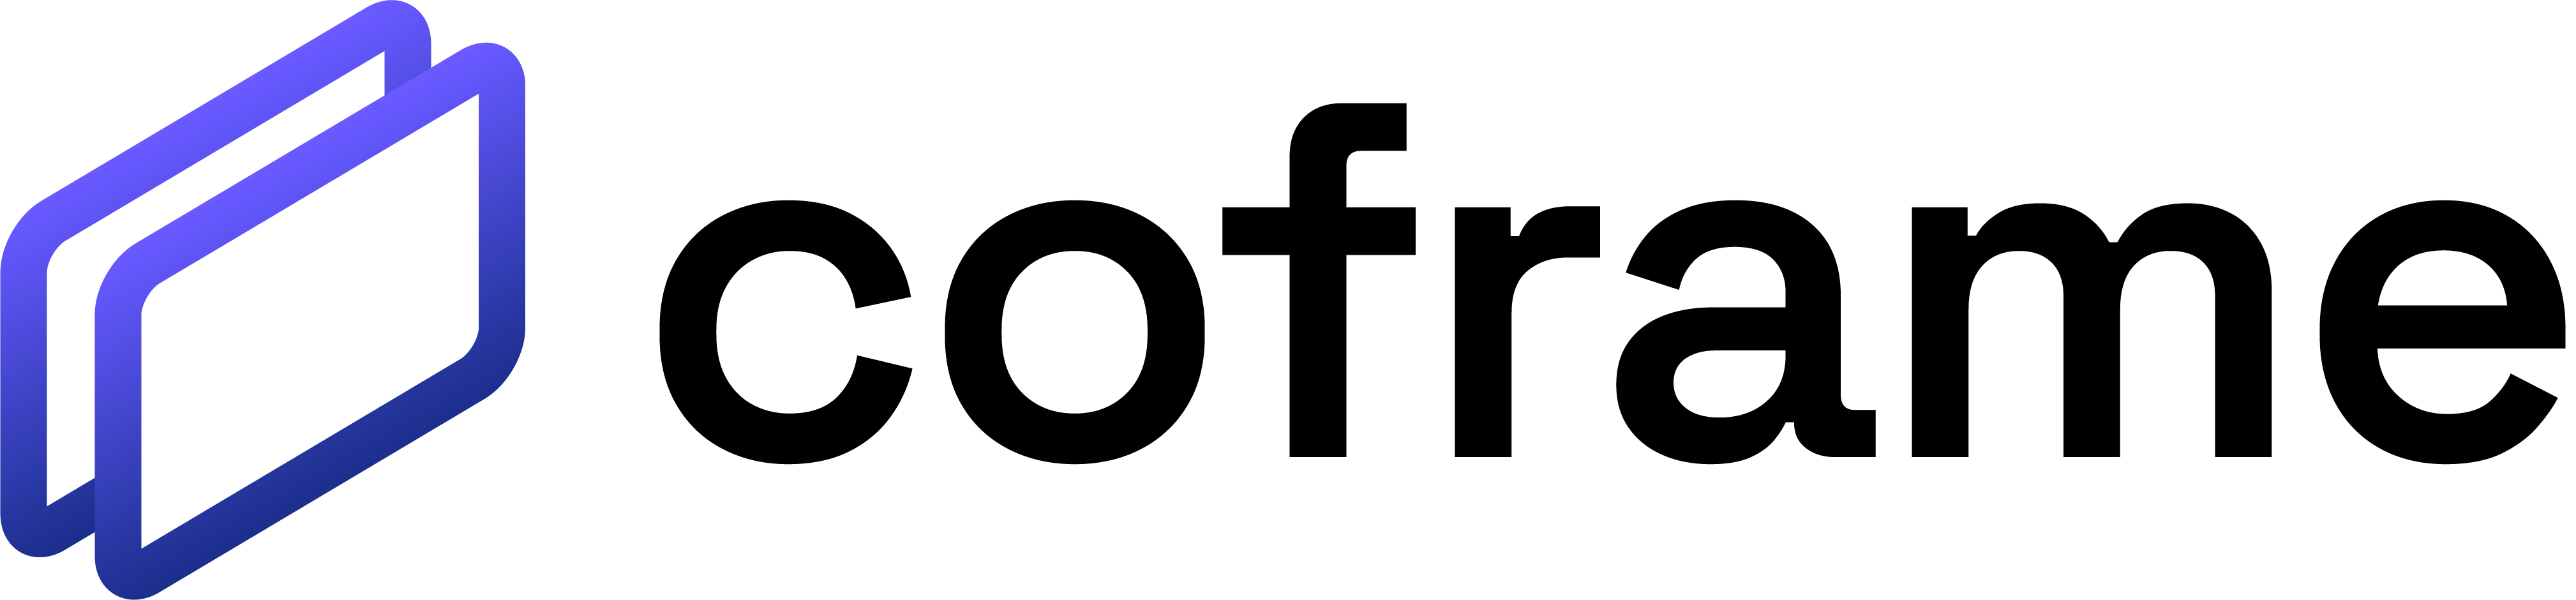 Coframe Logo